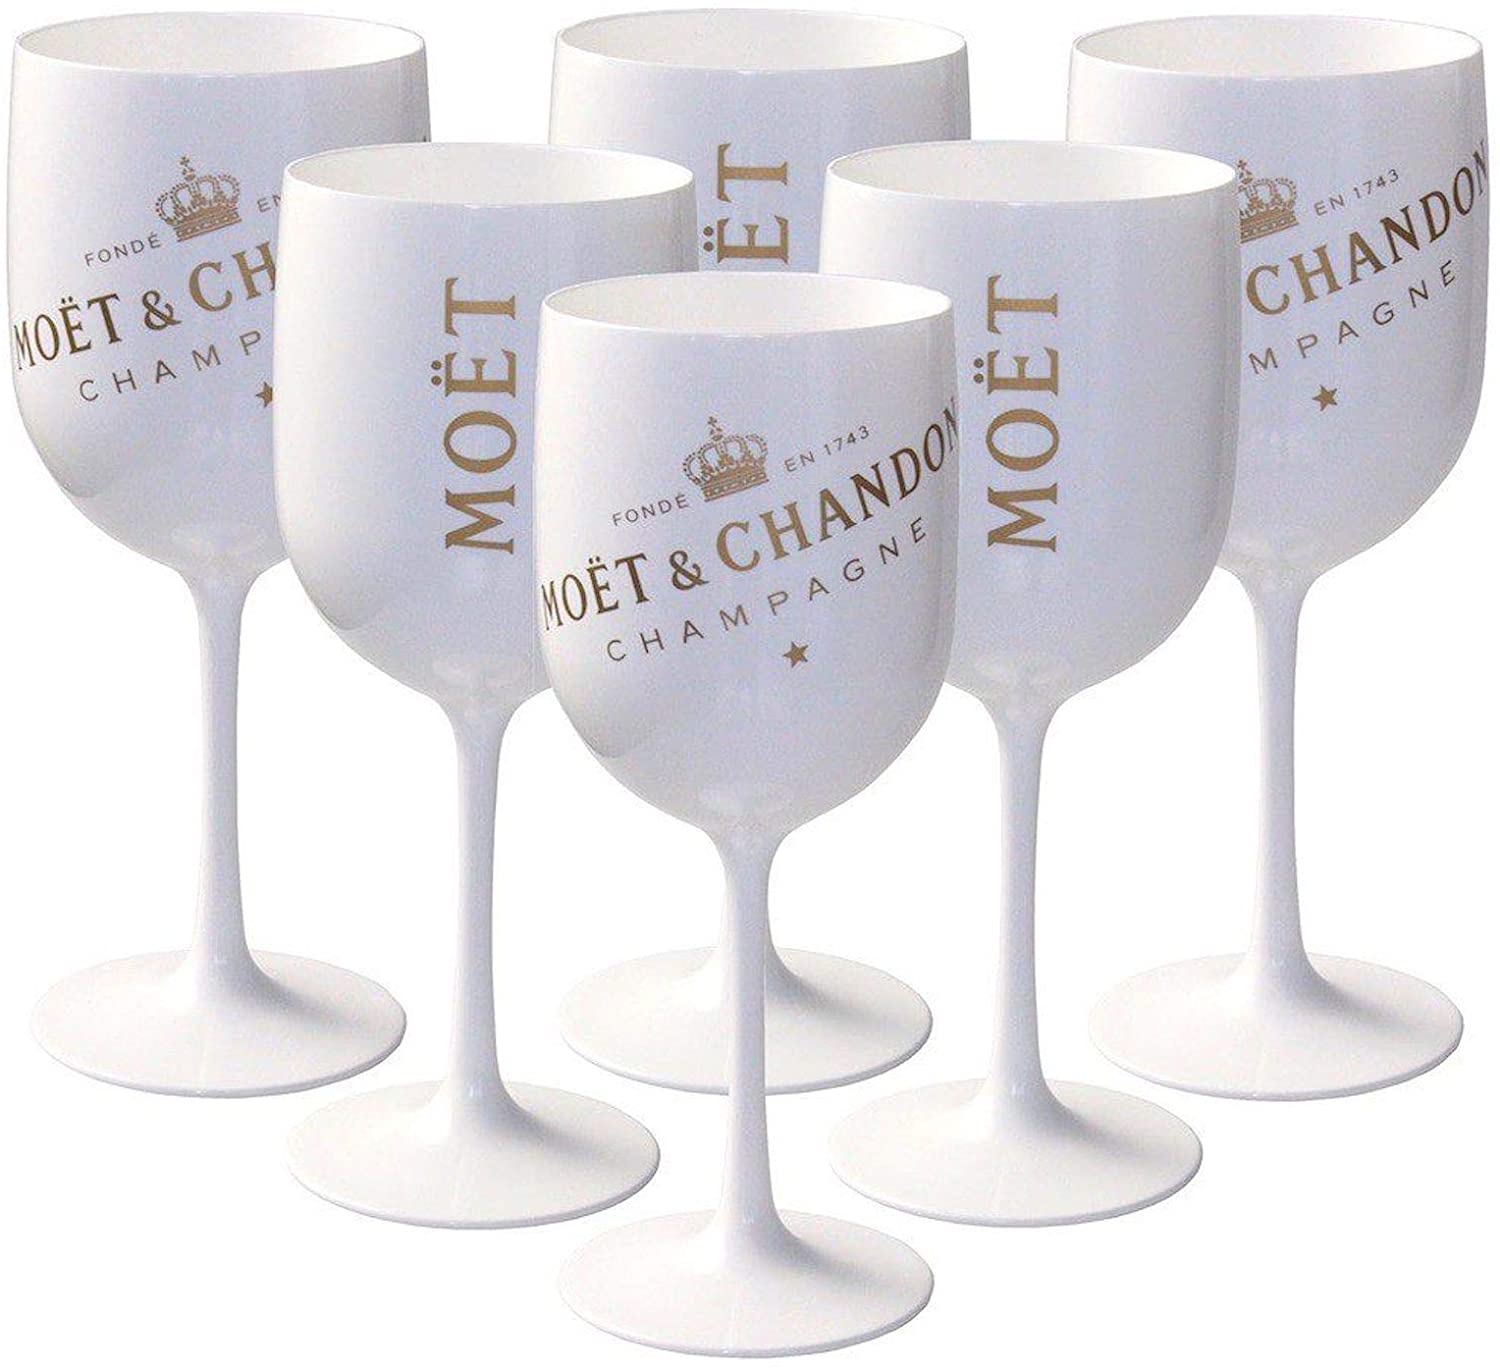 Rose Gold NEU OVP Moet & Chandon Champagner Glas Gläser Kupfer